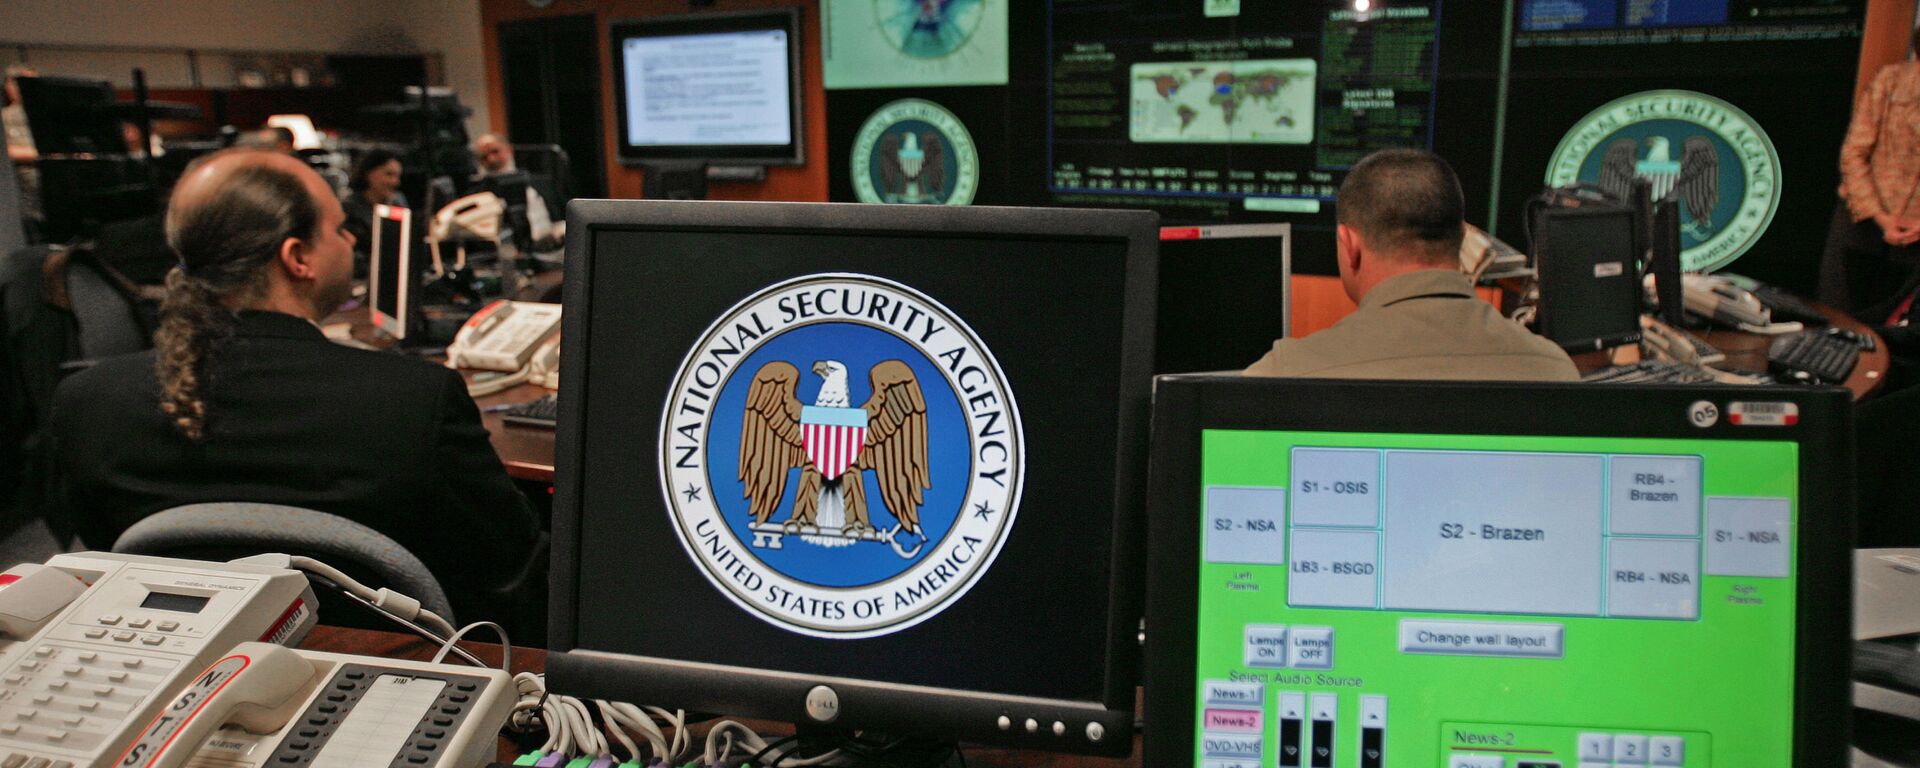 Компјутер са логом Националне безбедносне агенције САД у Мериленду - Sputnik Србија, 1920, 20.11.2021